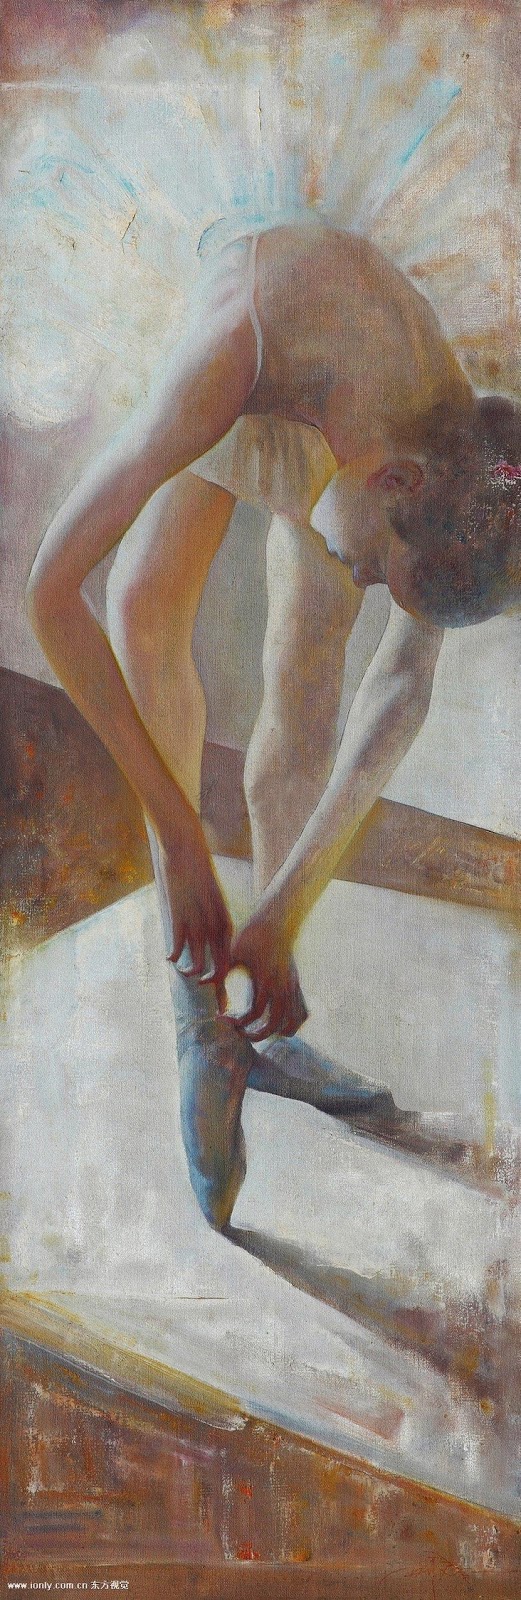 Xing Jianjian [邢健健] 1959 - Chinese Figurative painter 